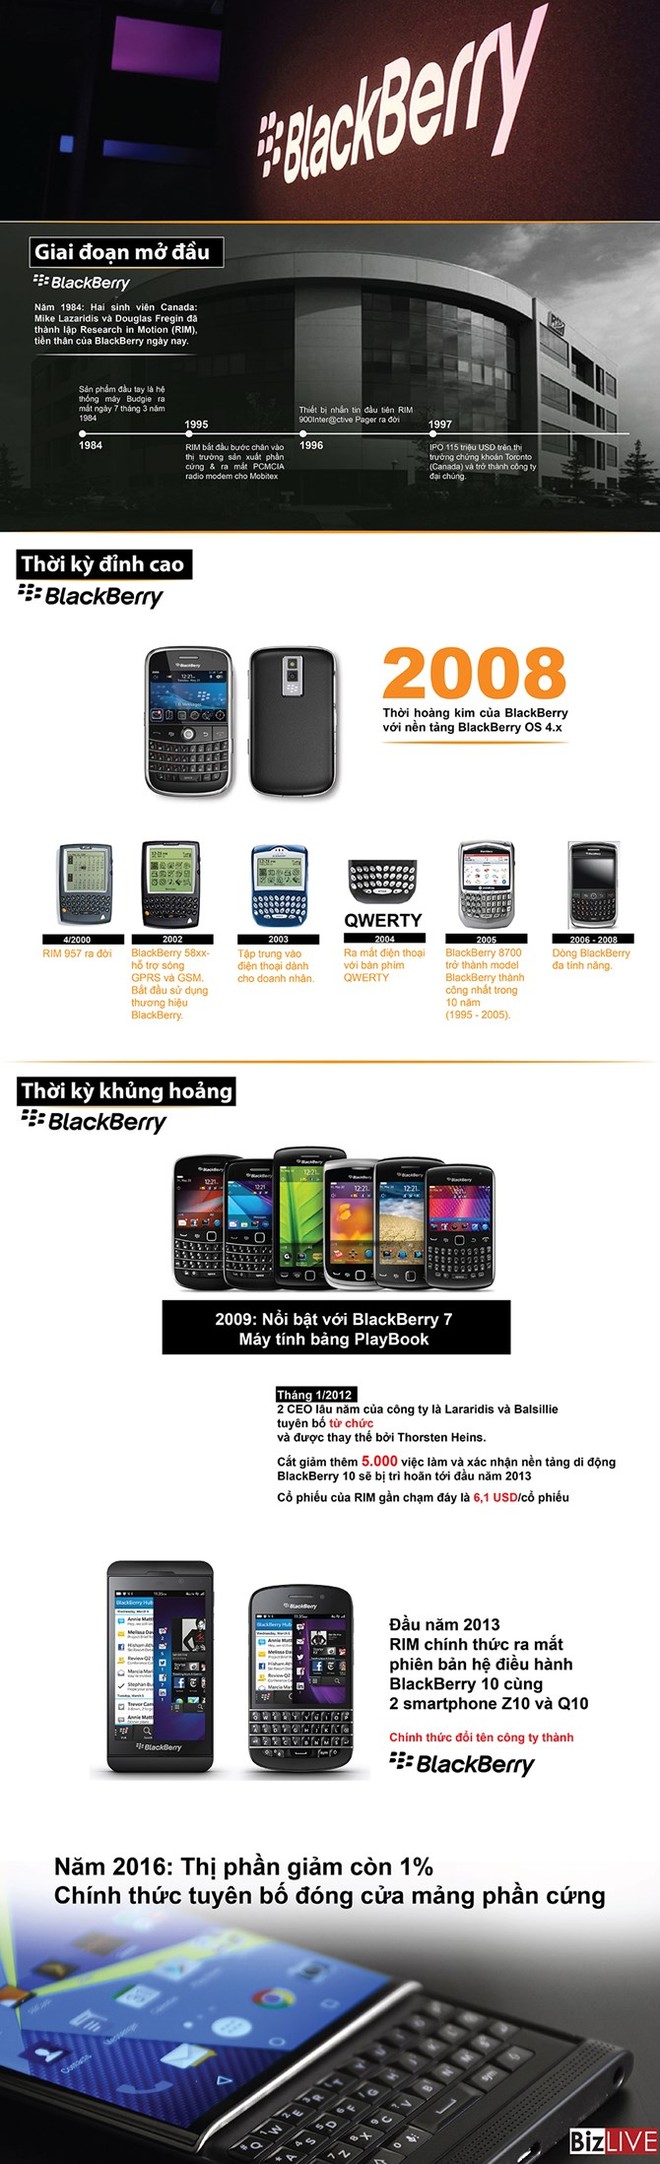 [Infographic] Hành trình từ thời hoàng kim đến phút khai tử mảng điện thoại BlackBerry - Ảnh 1.